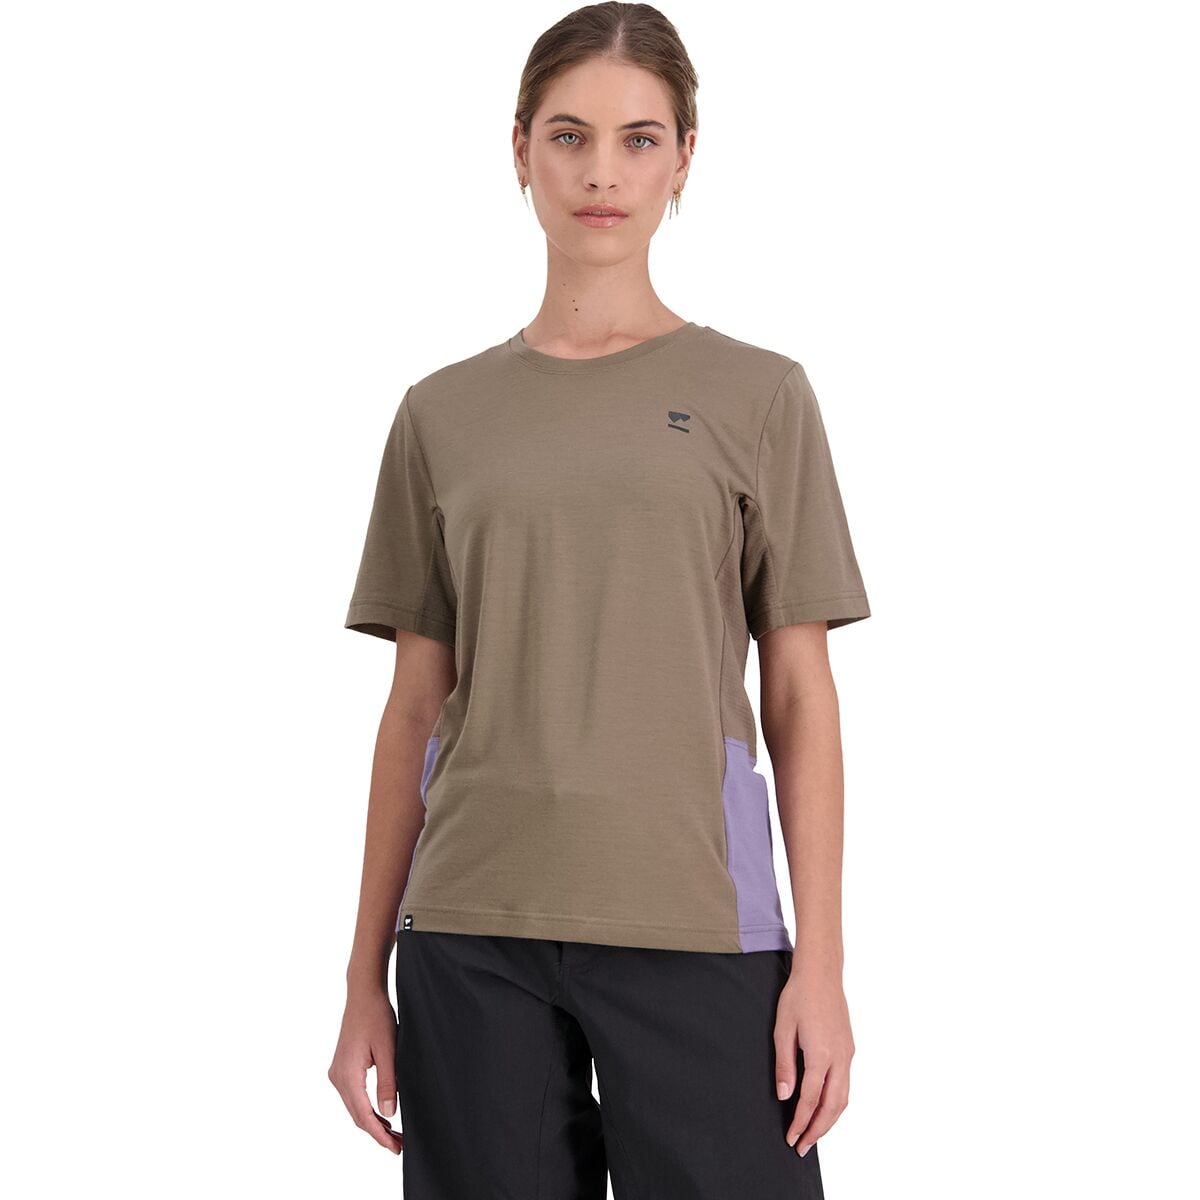 Mons Royale Tarn Merino Shift Short-Sleeve Shirt - Women's